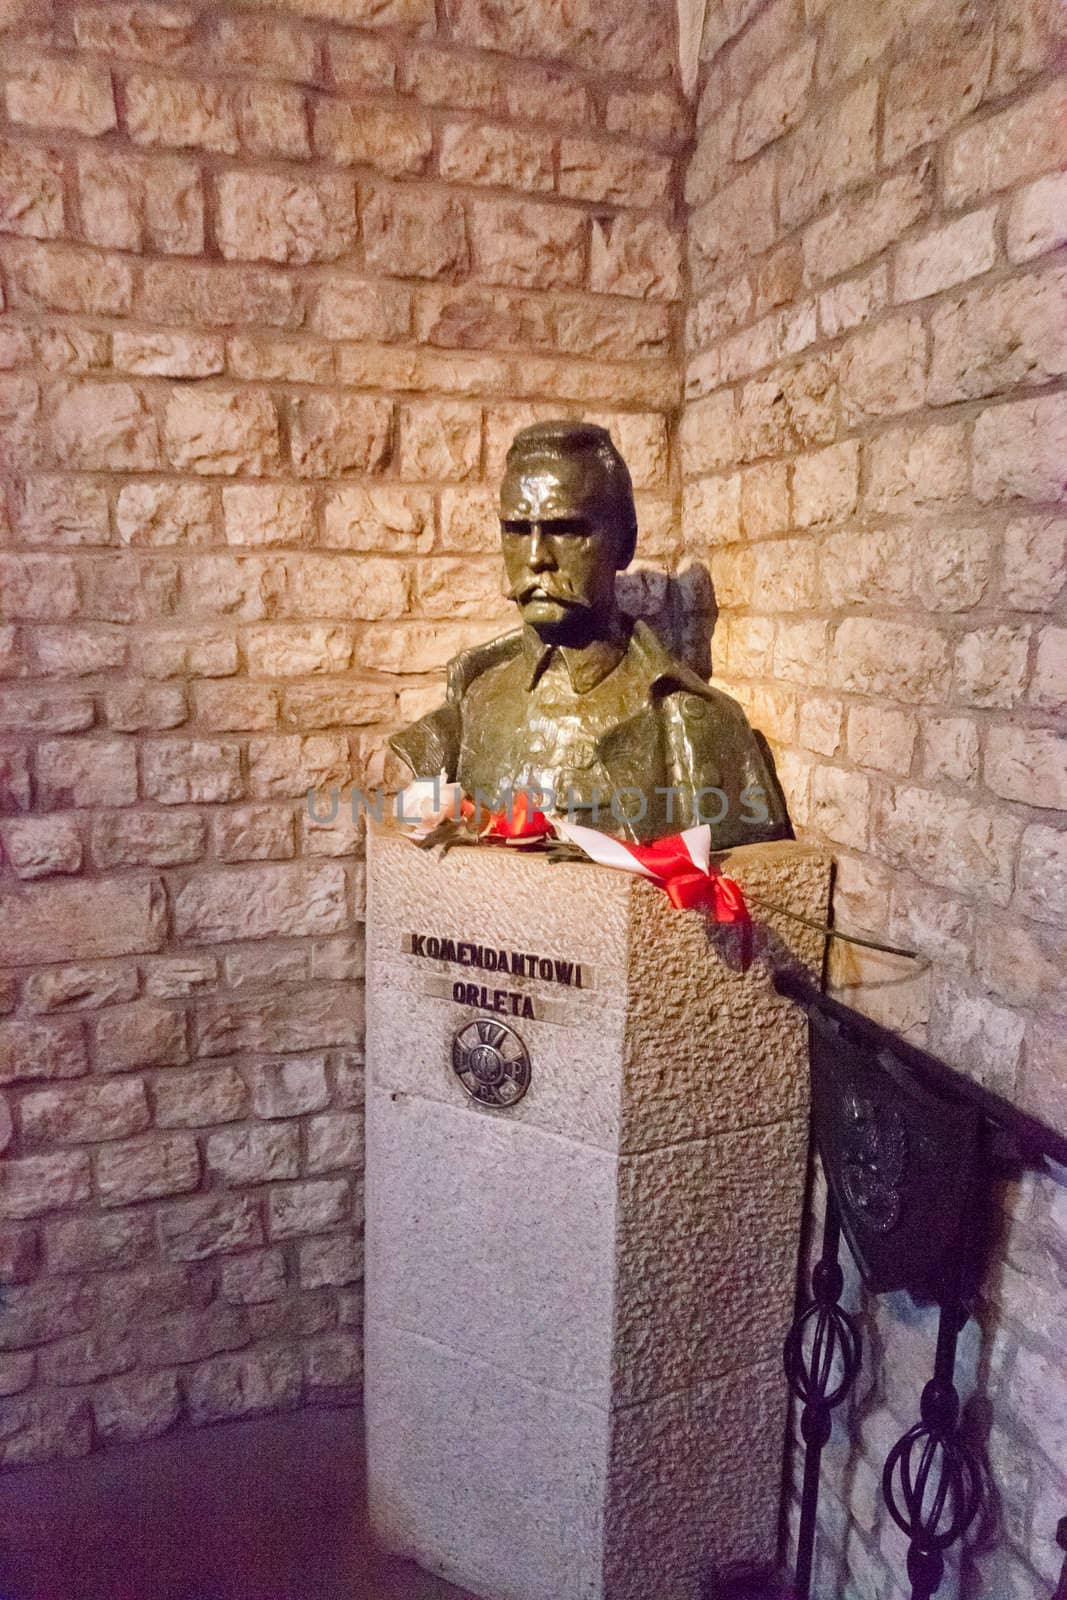 Józef Piłsudski's crypt in Wawel Cathedral